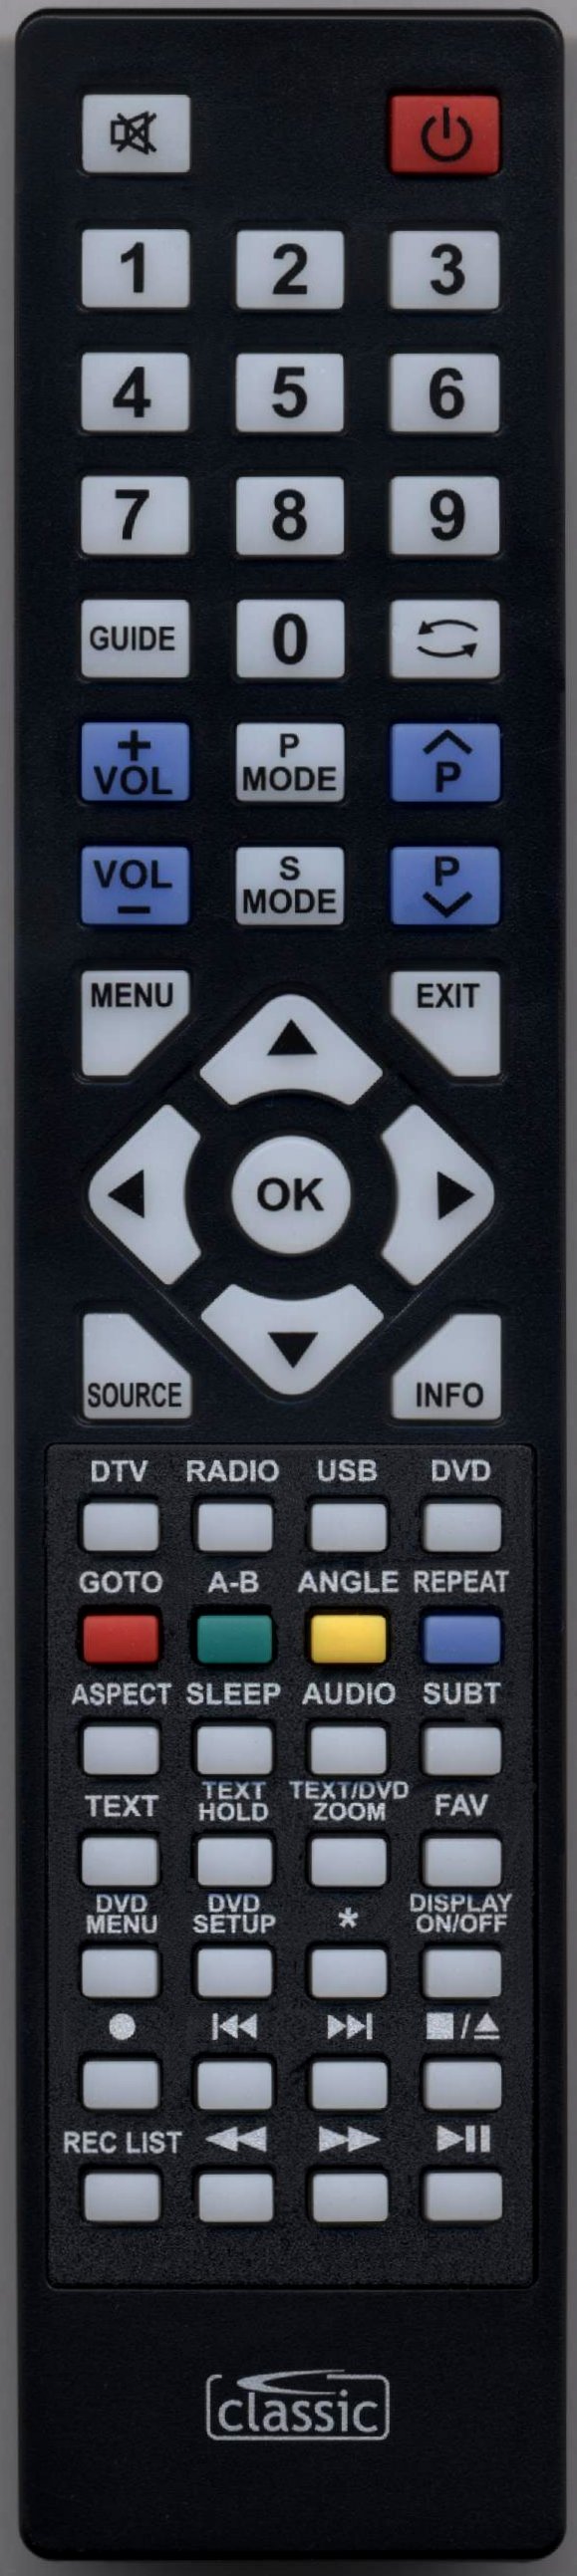 TECHNIKA 24F22B-HD/DVD Remote Control Alternative